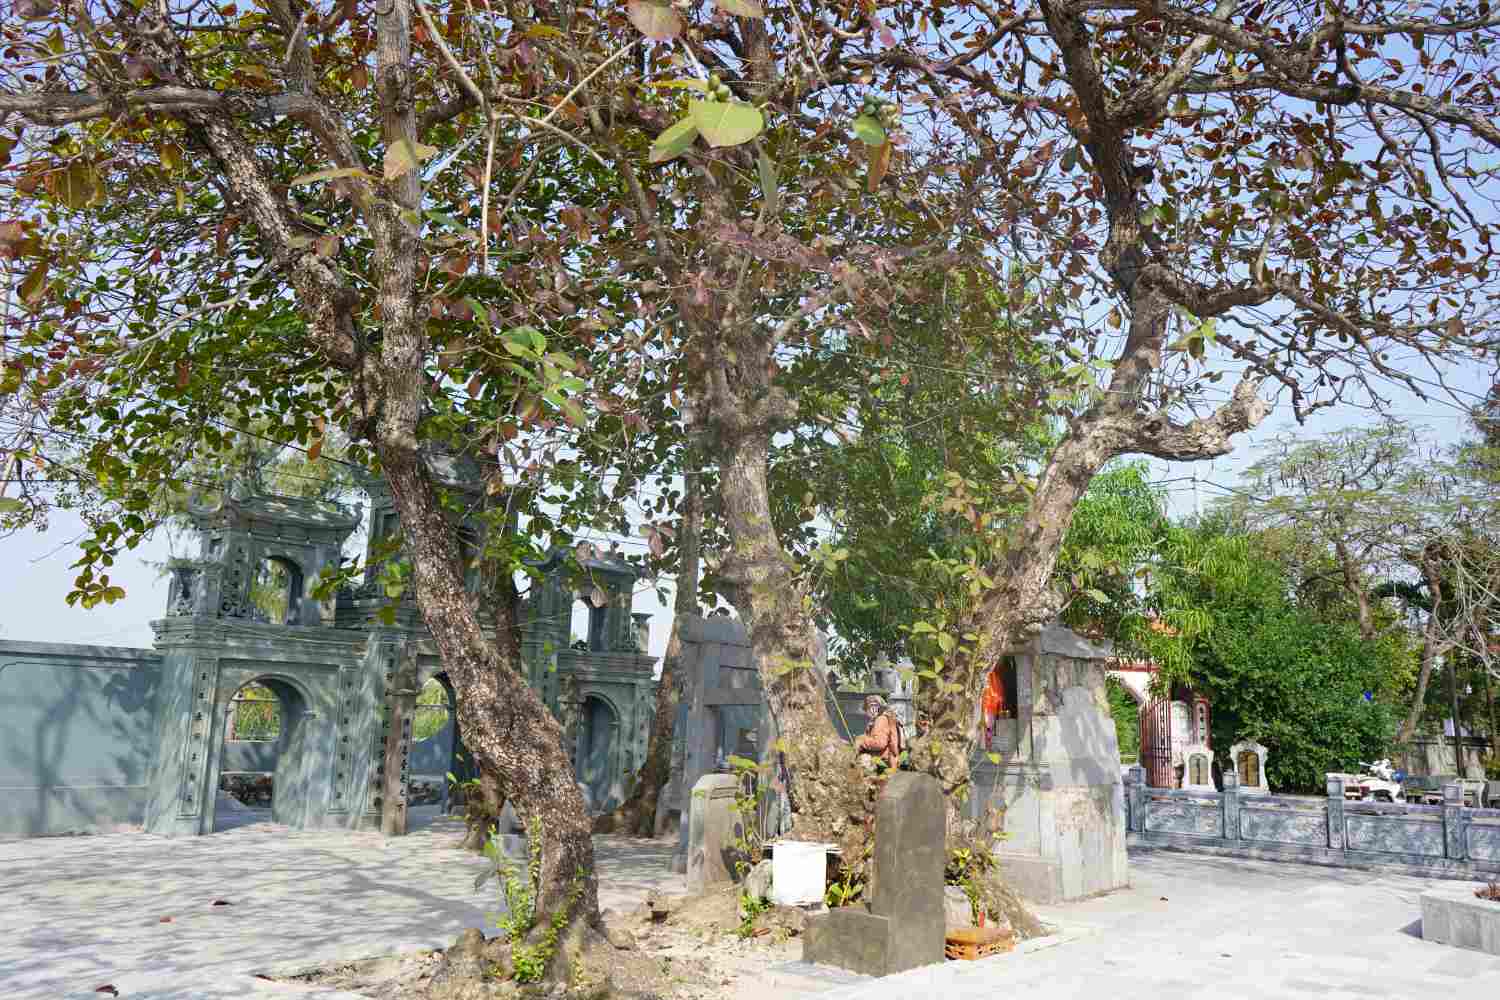 Đền Canh Sơn (Đền Bì) không chỉ nổi tiếng bởi kiến thúc độc lạ hoàn toàn bằng đá xanh, nằm lộ thiên mà còn ấn tượng với hệ thống cây cổ thụ trong khuôn viên đền. Trong đó, có 2 cây cổ thụ được công nhận là cây di sản từ năm 2019. 